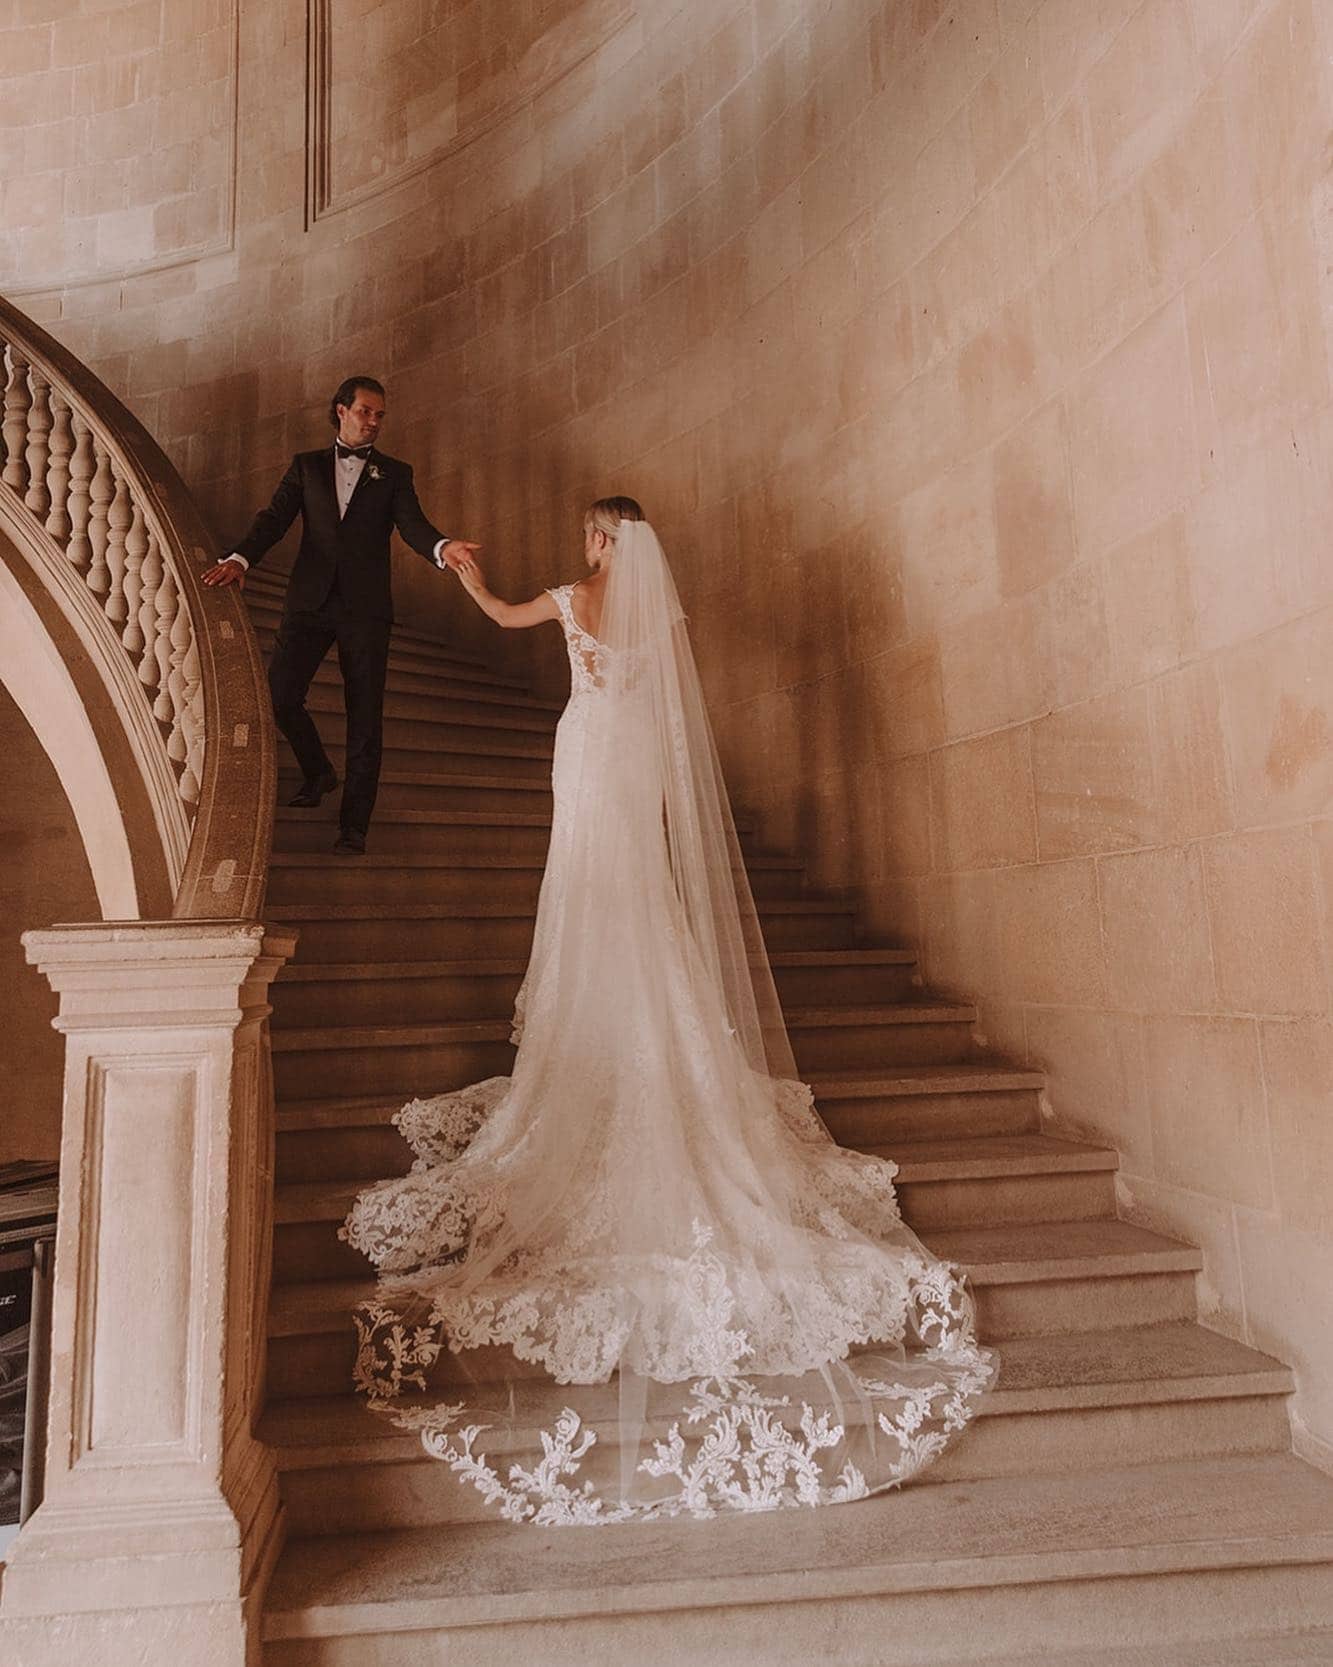 Pareja de novios subiendo una escalera juntos, enfrentando nervios antes de la boda